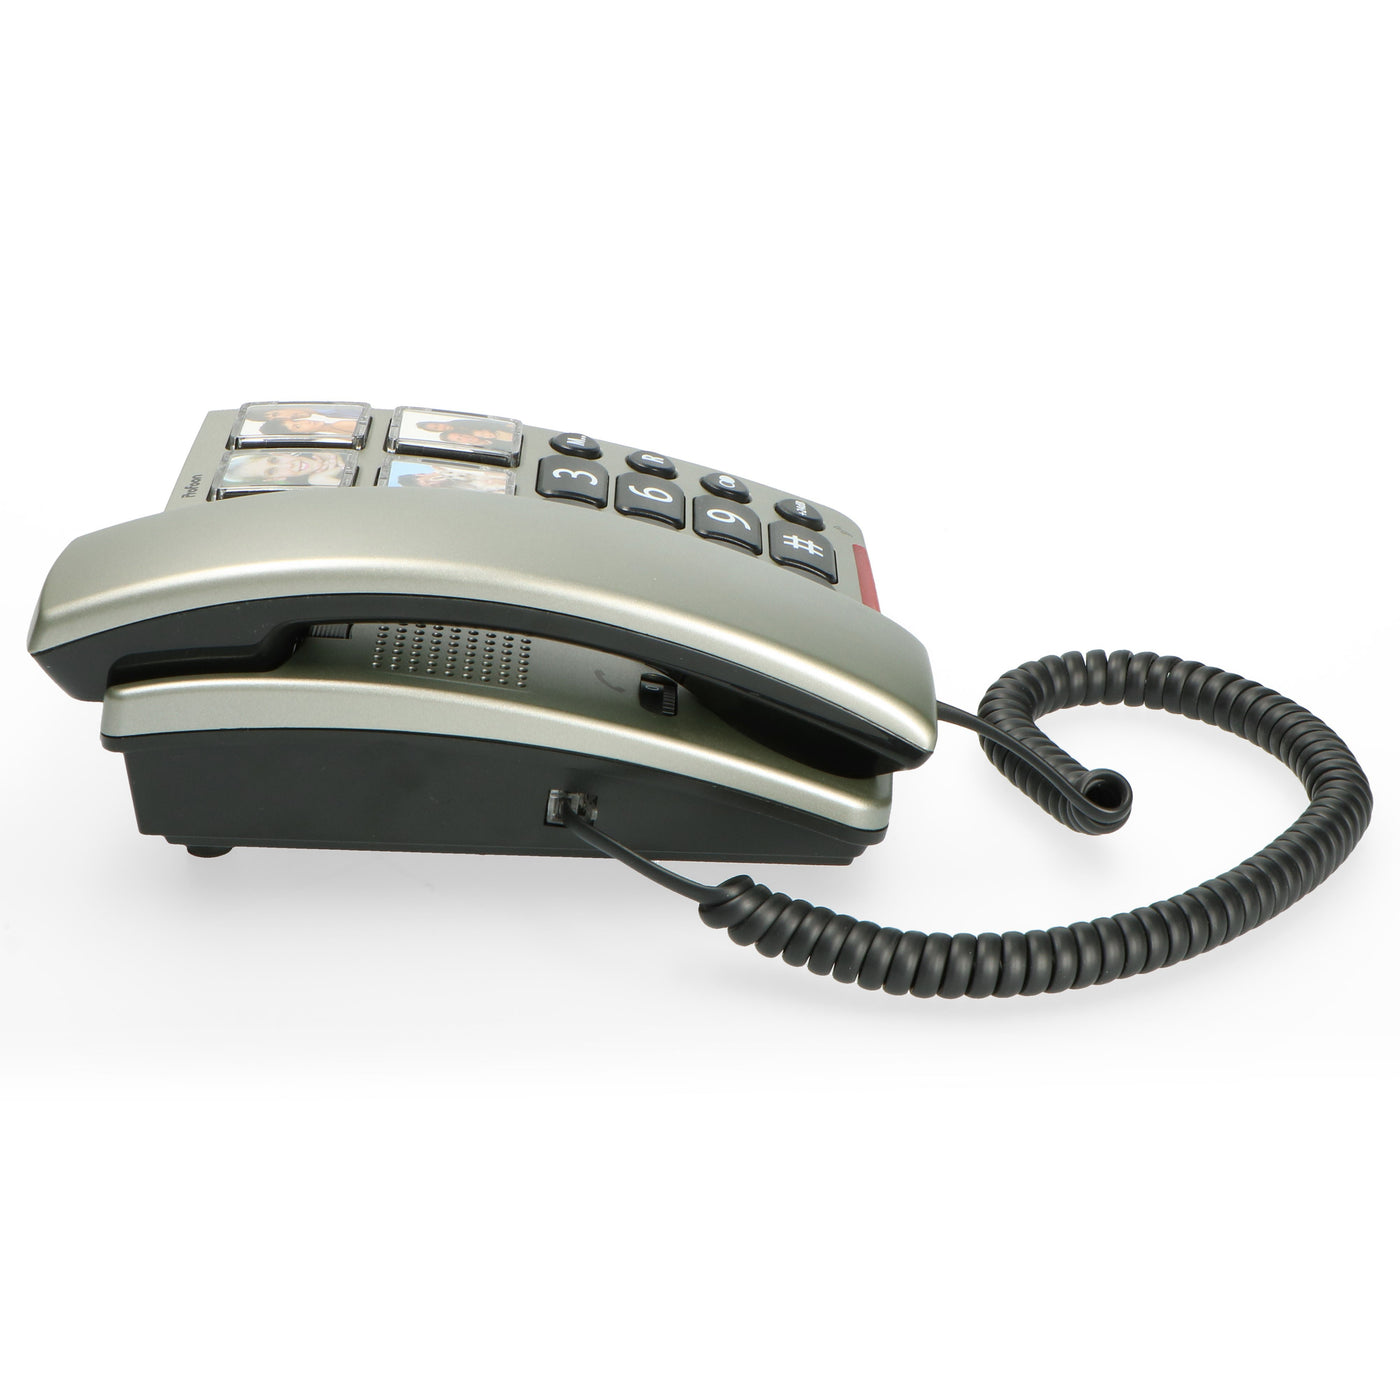 Profoon TX-560 - Vaste telefoon met grote fototoetsen en cijfers, zwart